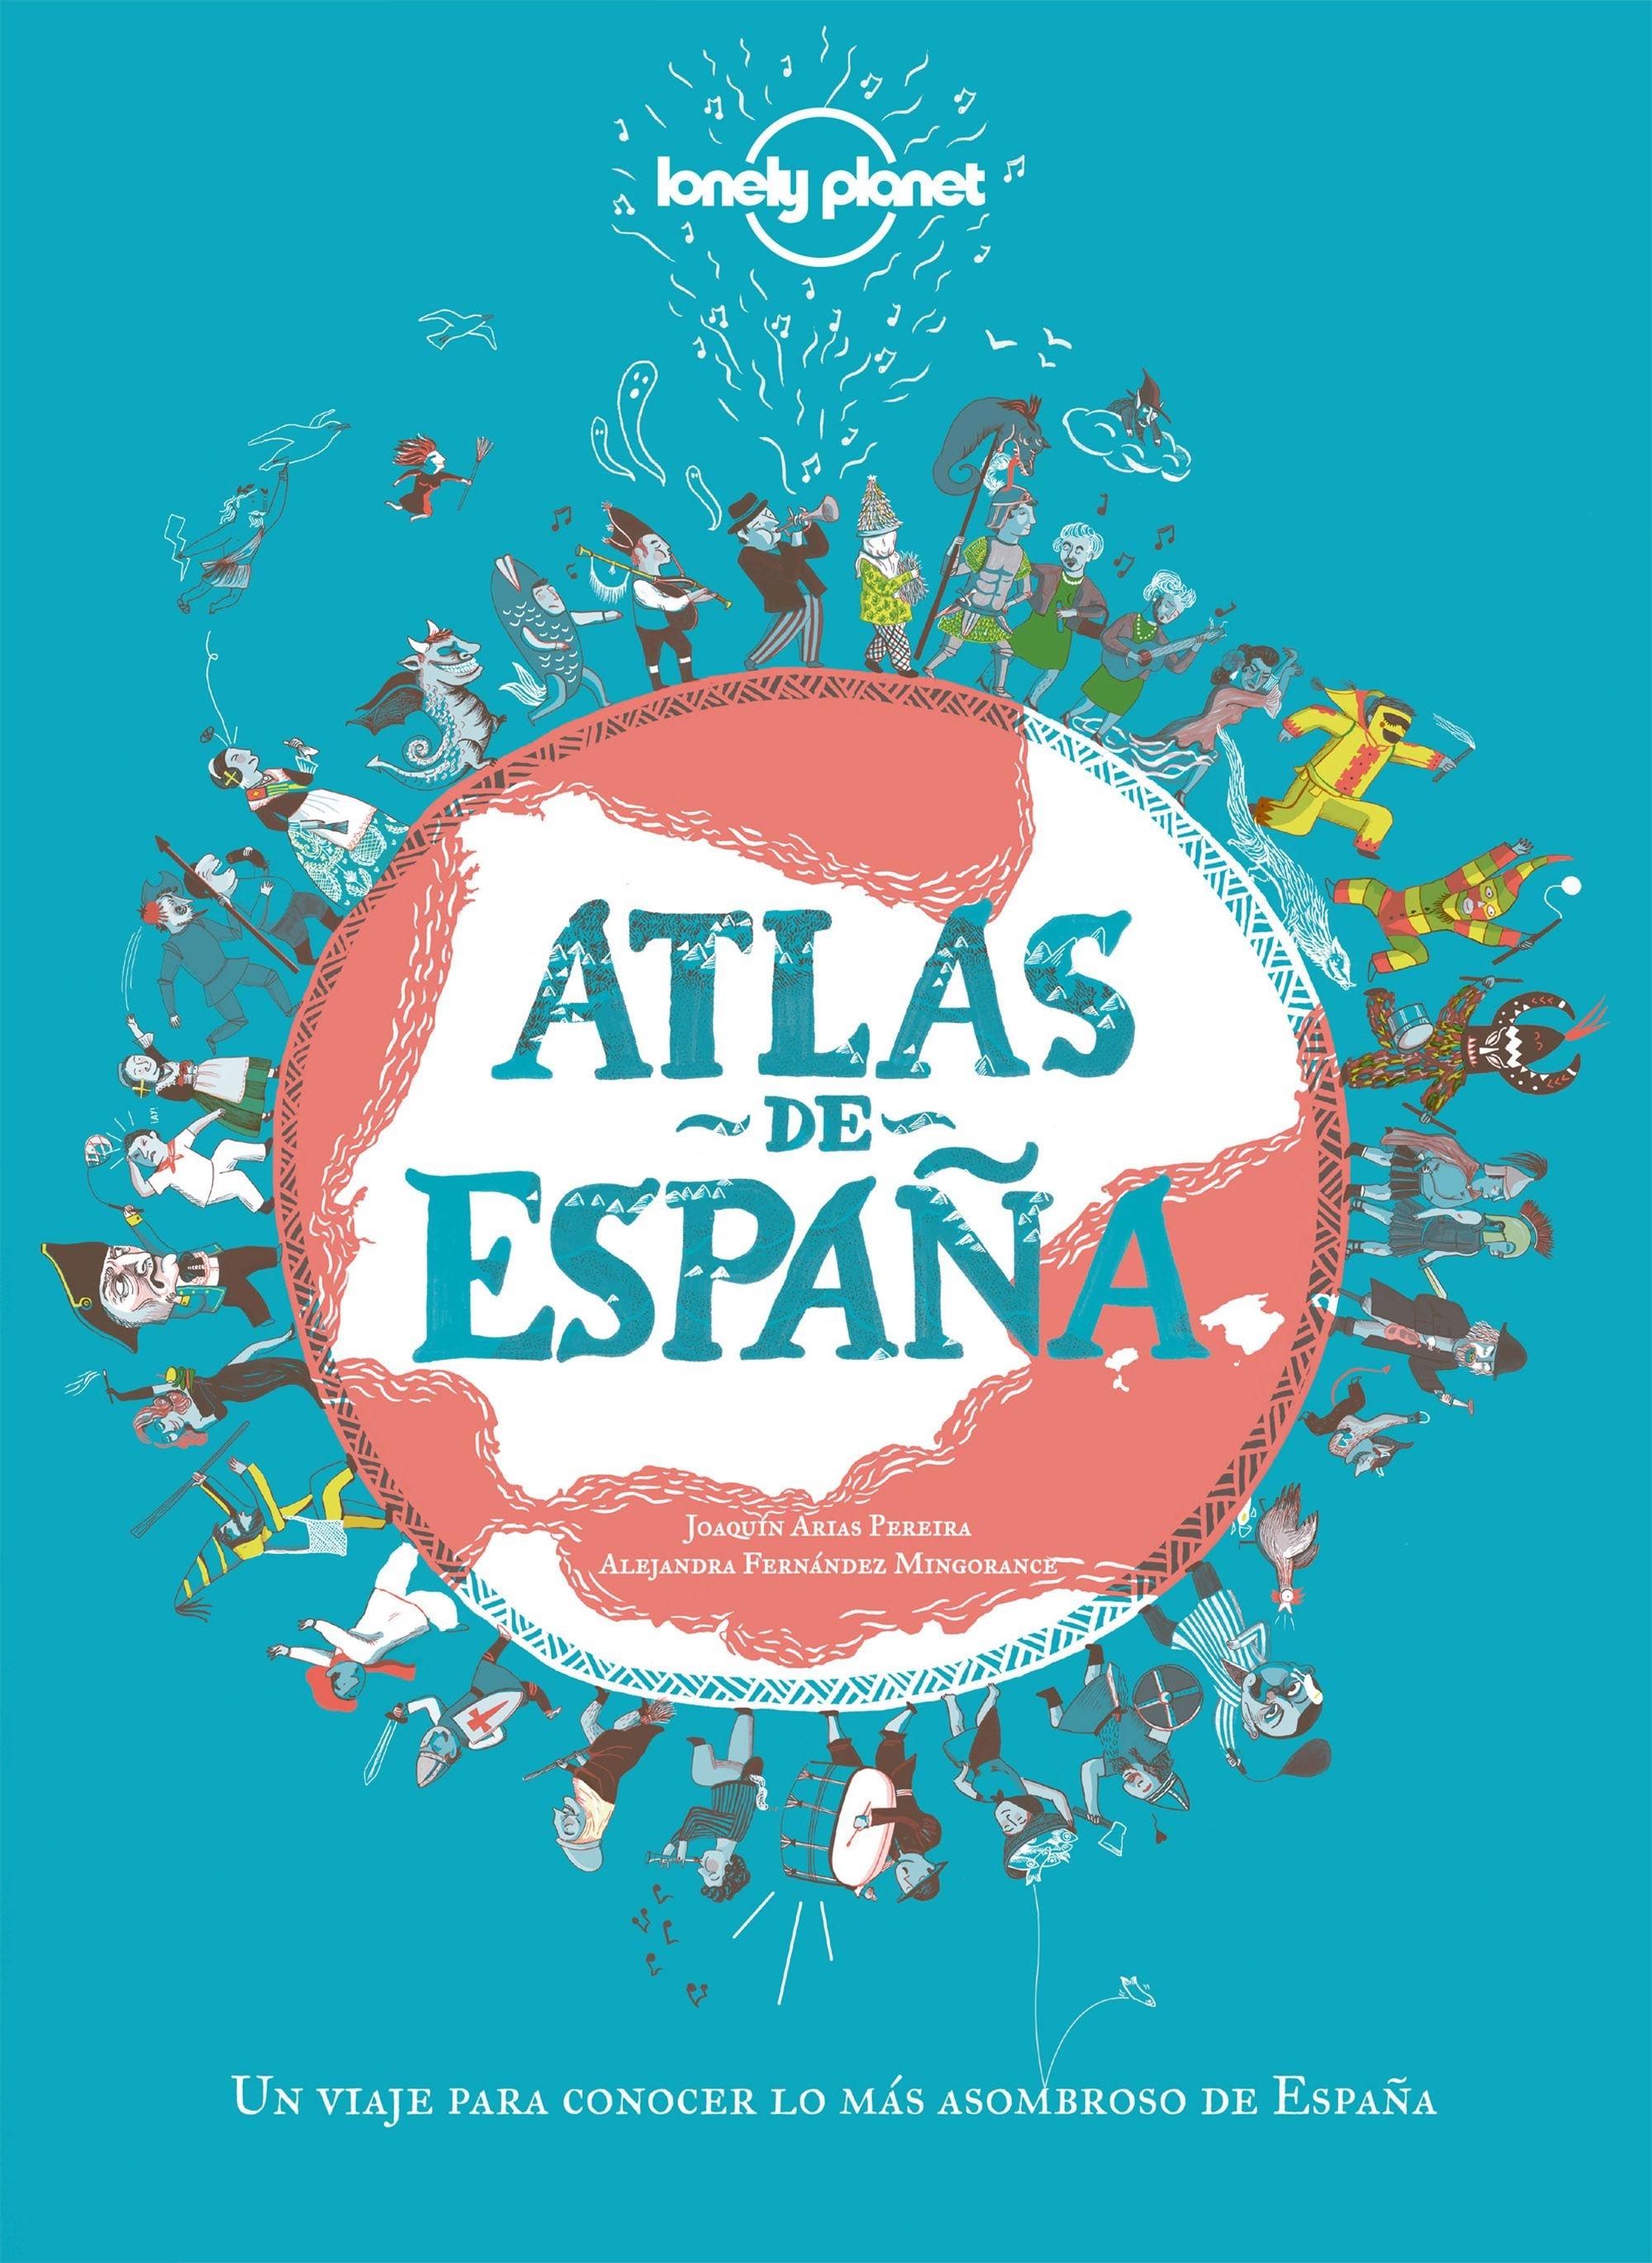 Atlas de España "Un Viaje para Conocer lo Más Asombroso de España". 